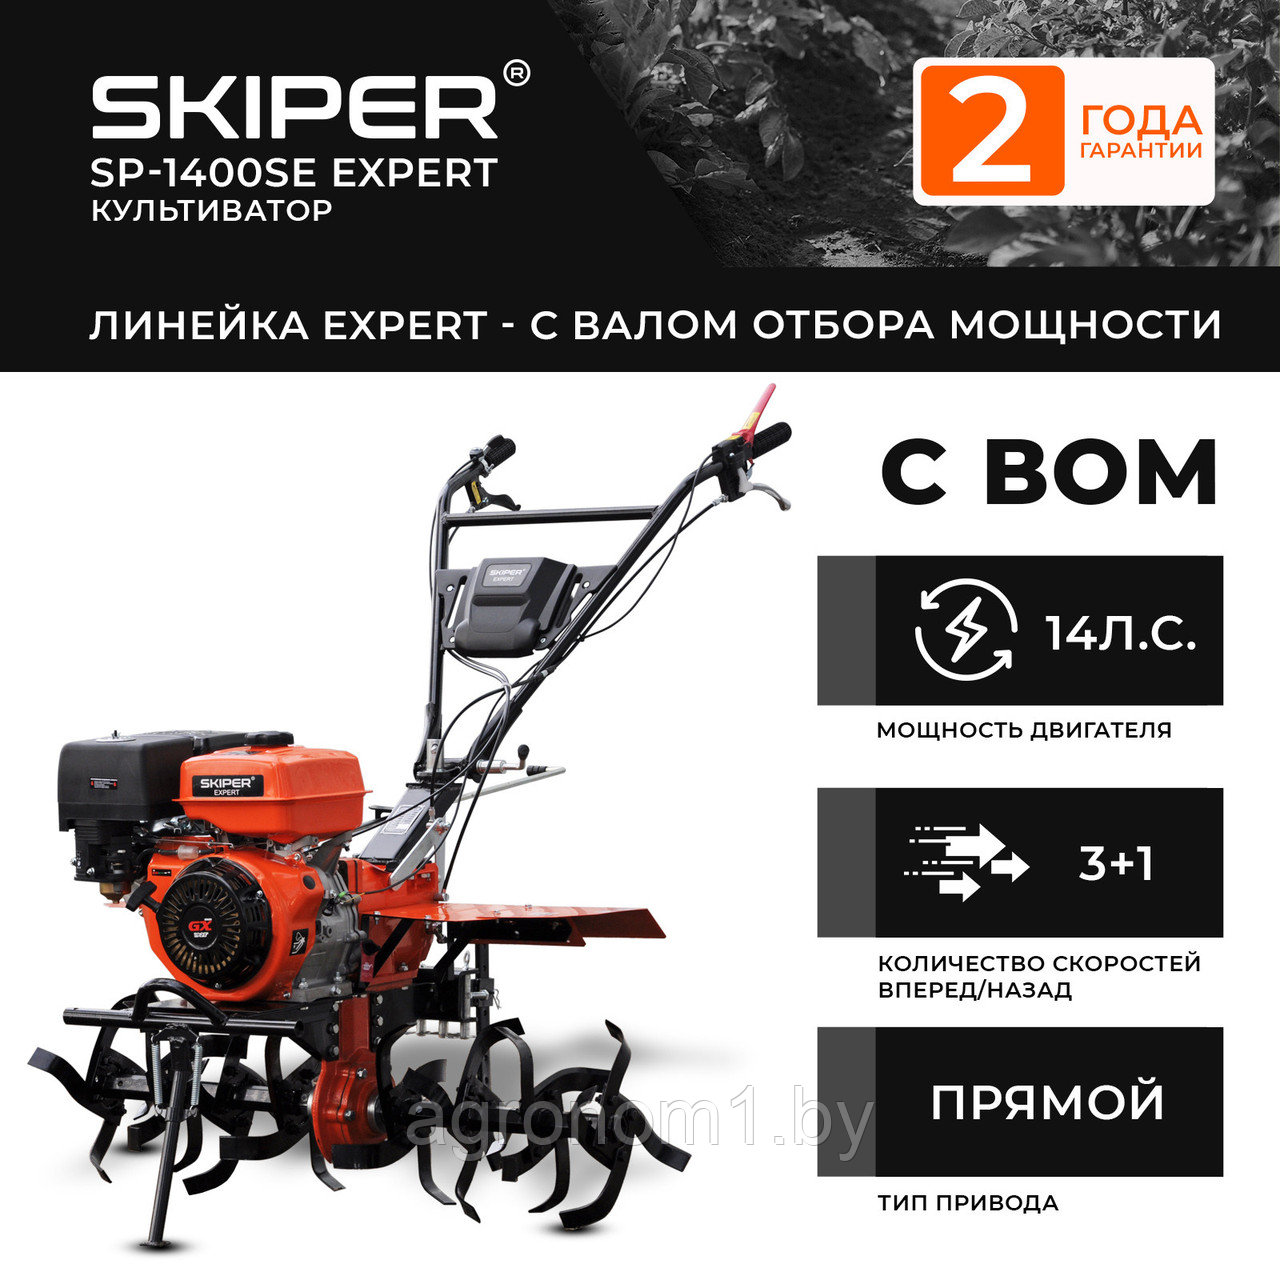 Мотоблок SKIPER SP-1400SE Expert (14 лс, с ВОМ ф18х20, повор.ступицы, 3+1, 2 год.гарант, без колёс)